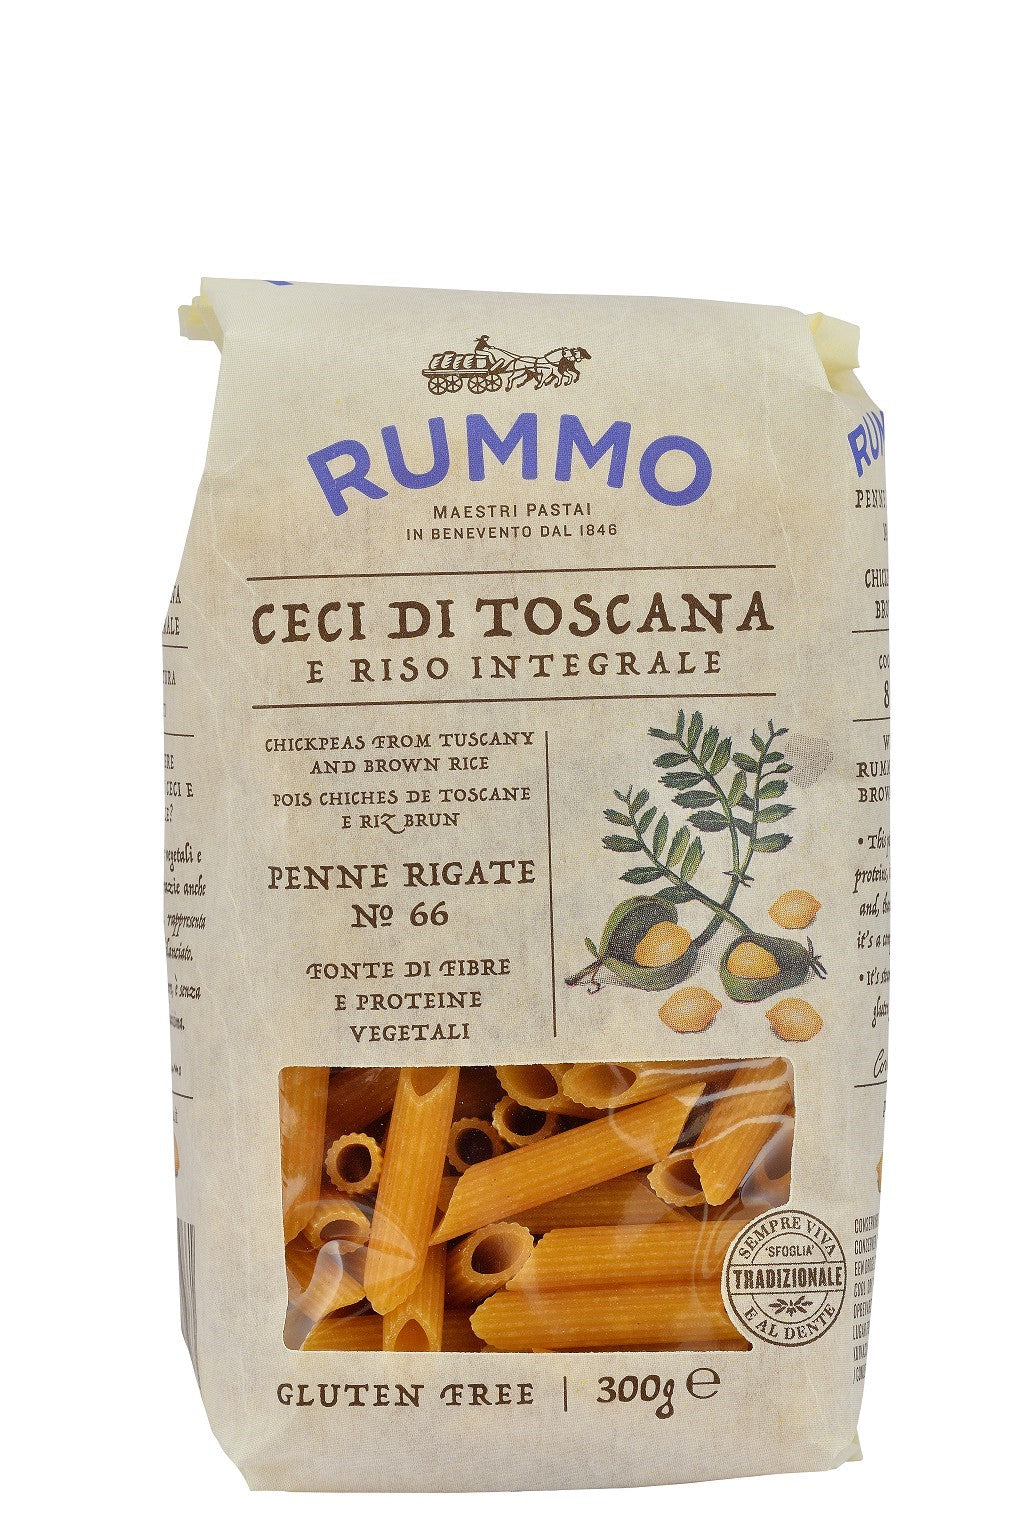 RUMMO Penne rigate C/Legumi № 66 gluten-free